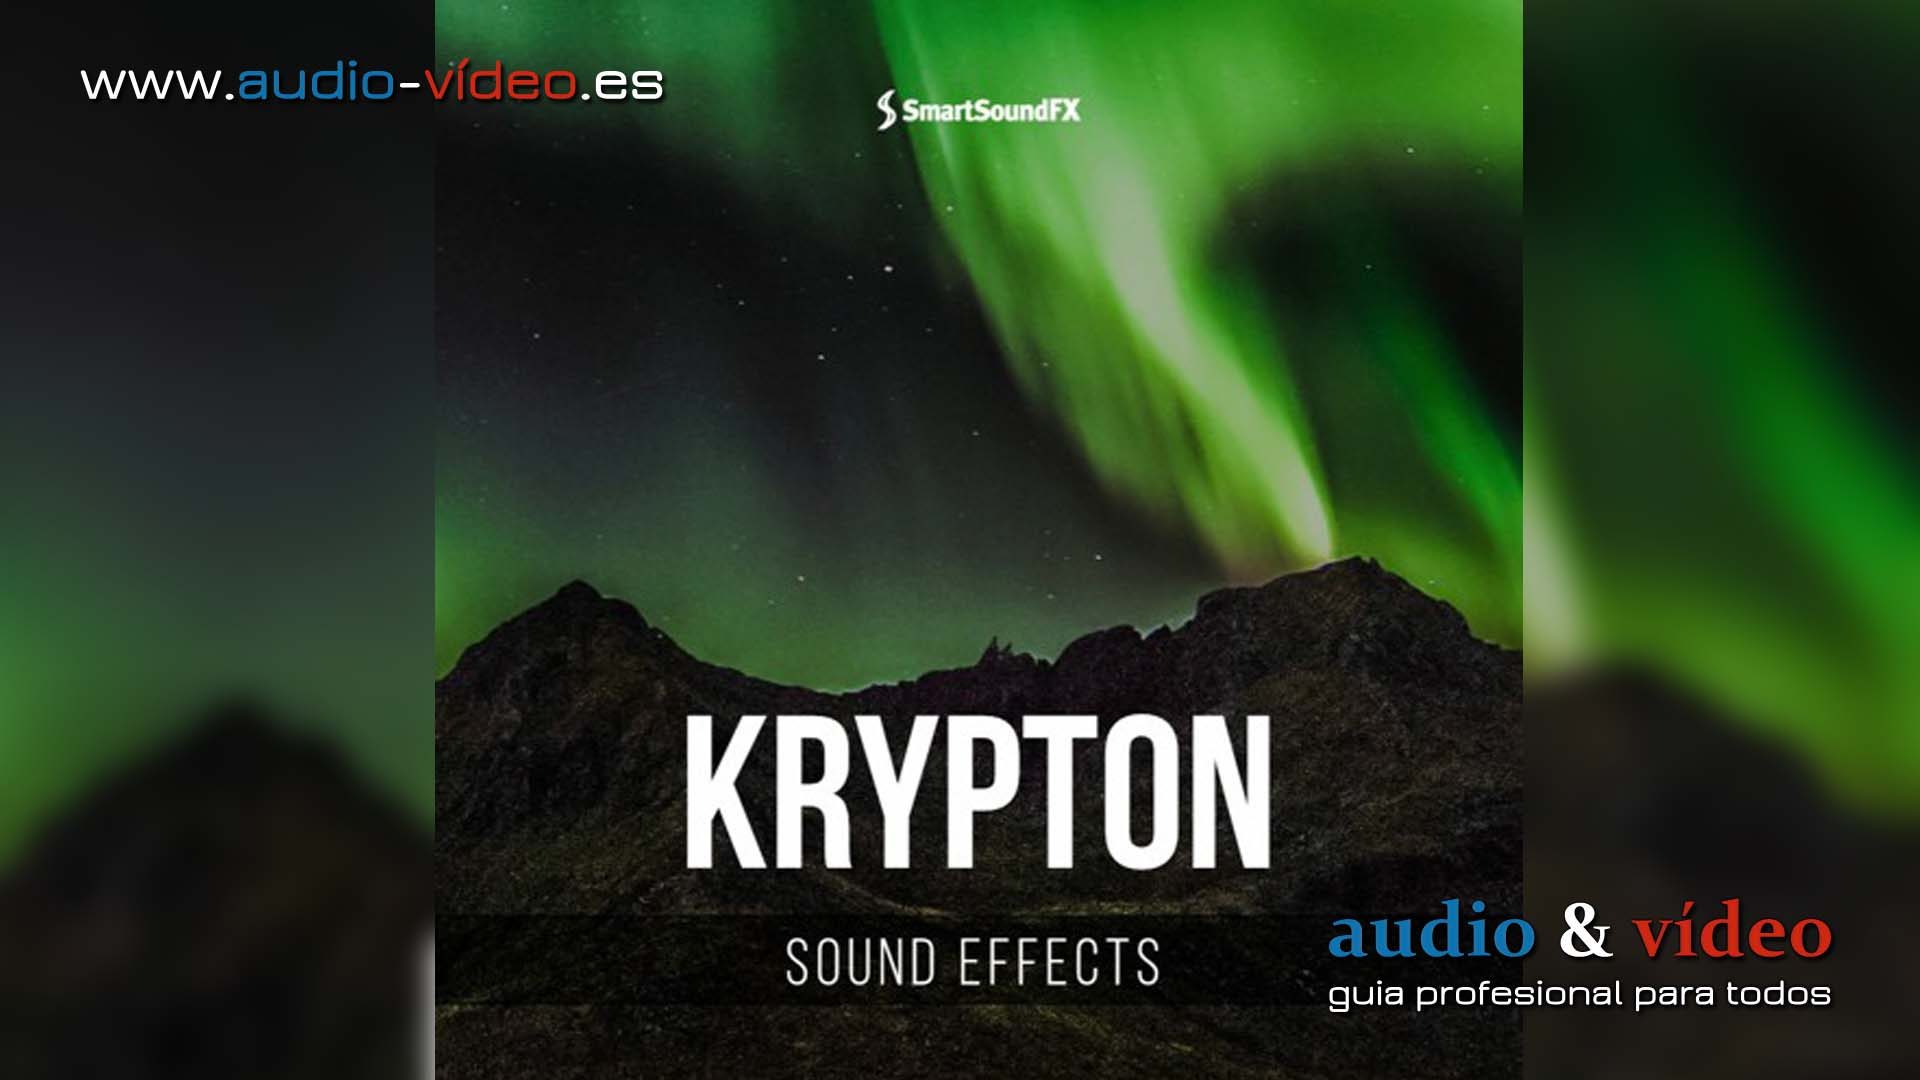 Smart Sound FX – presenta nuevo disco Krypton – Sound Effects.